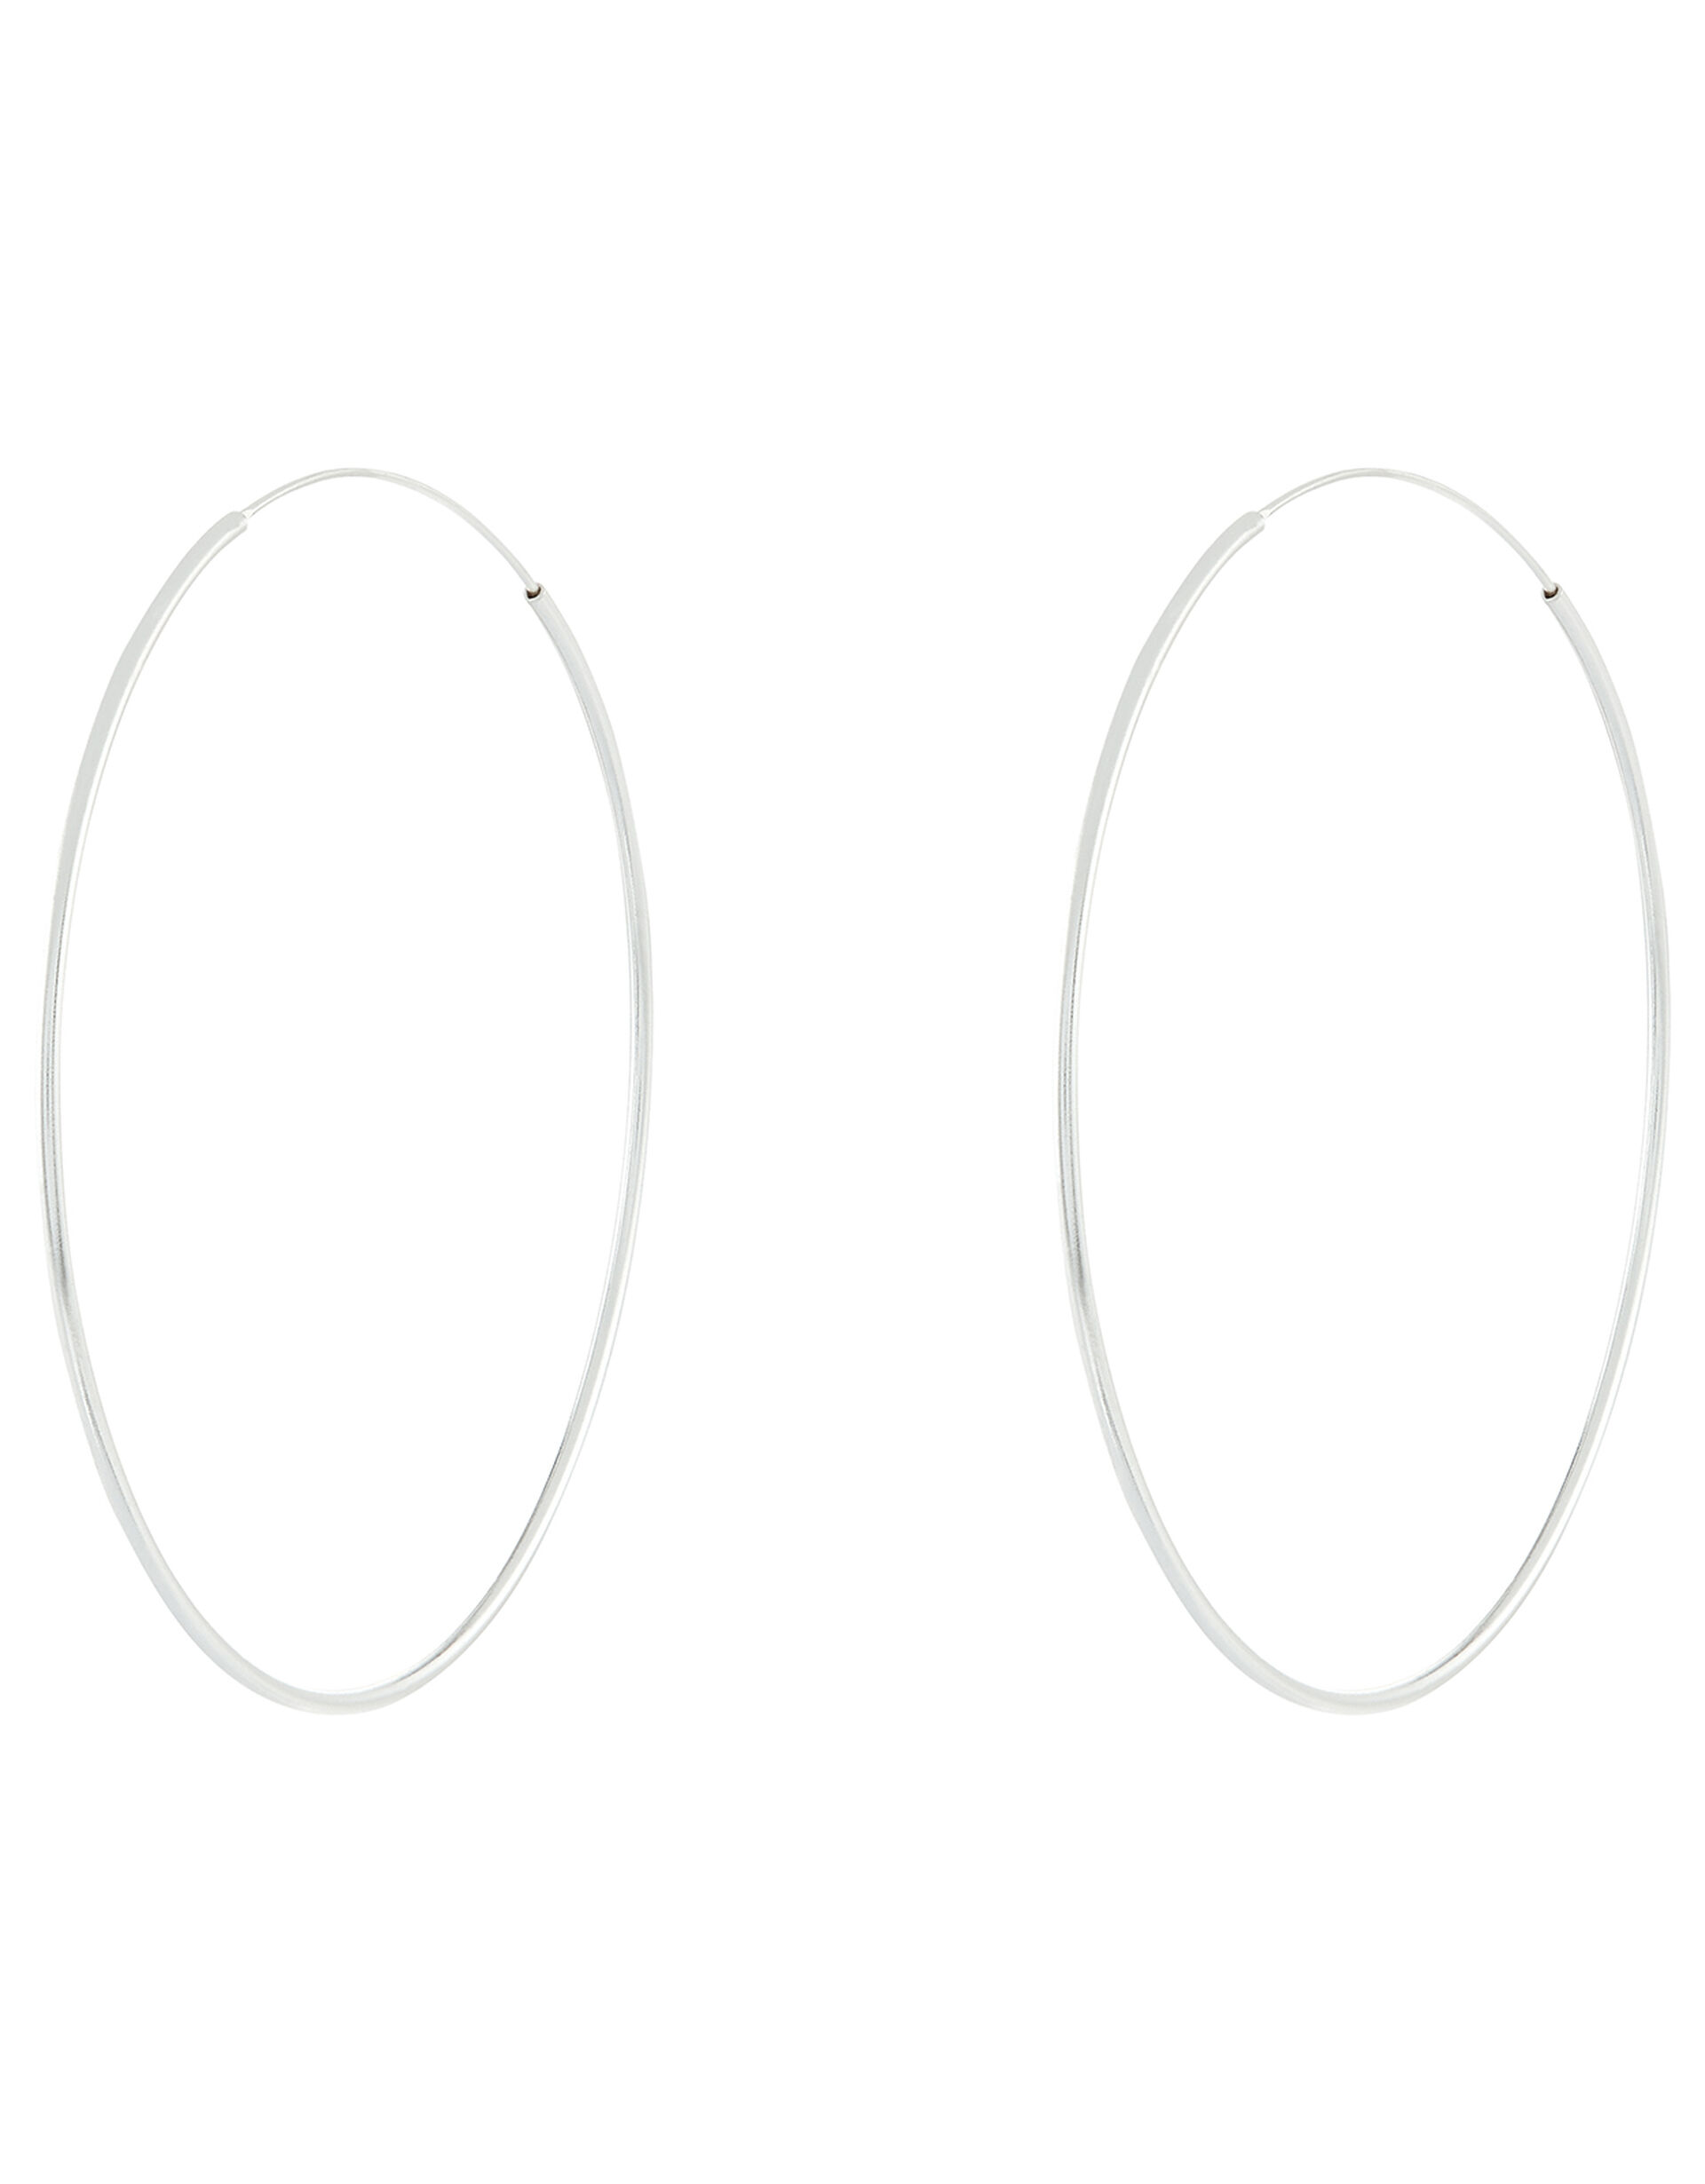 Sterling Silver Large Hoop Earrings, , large